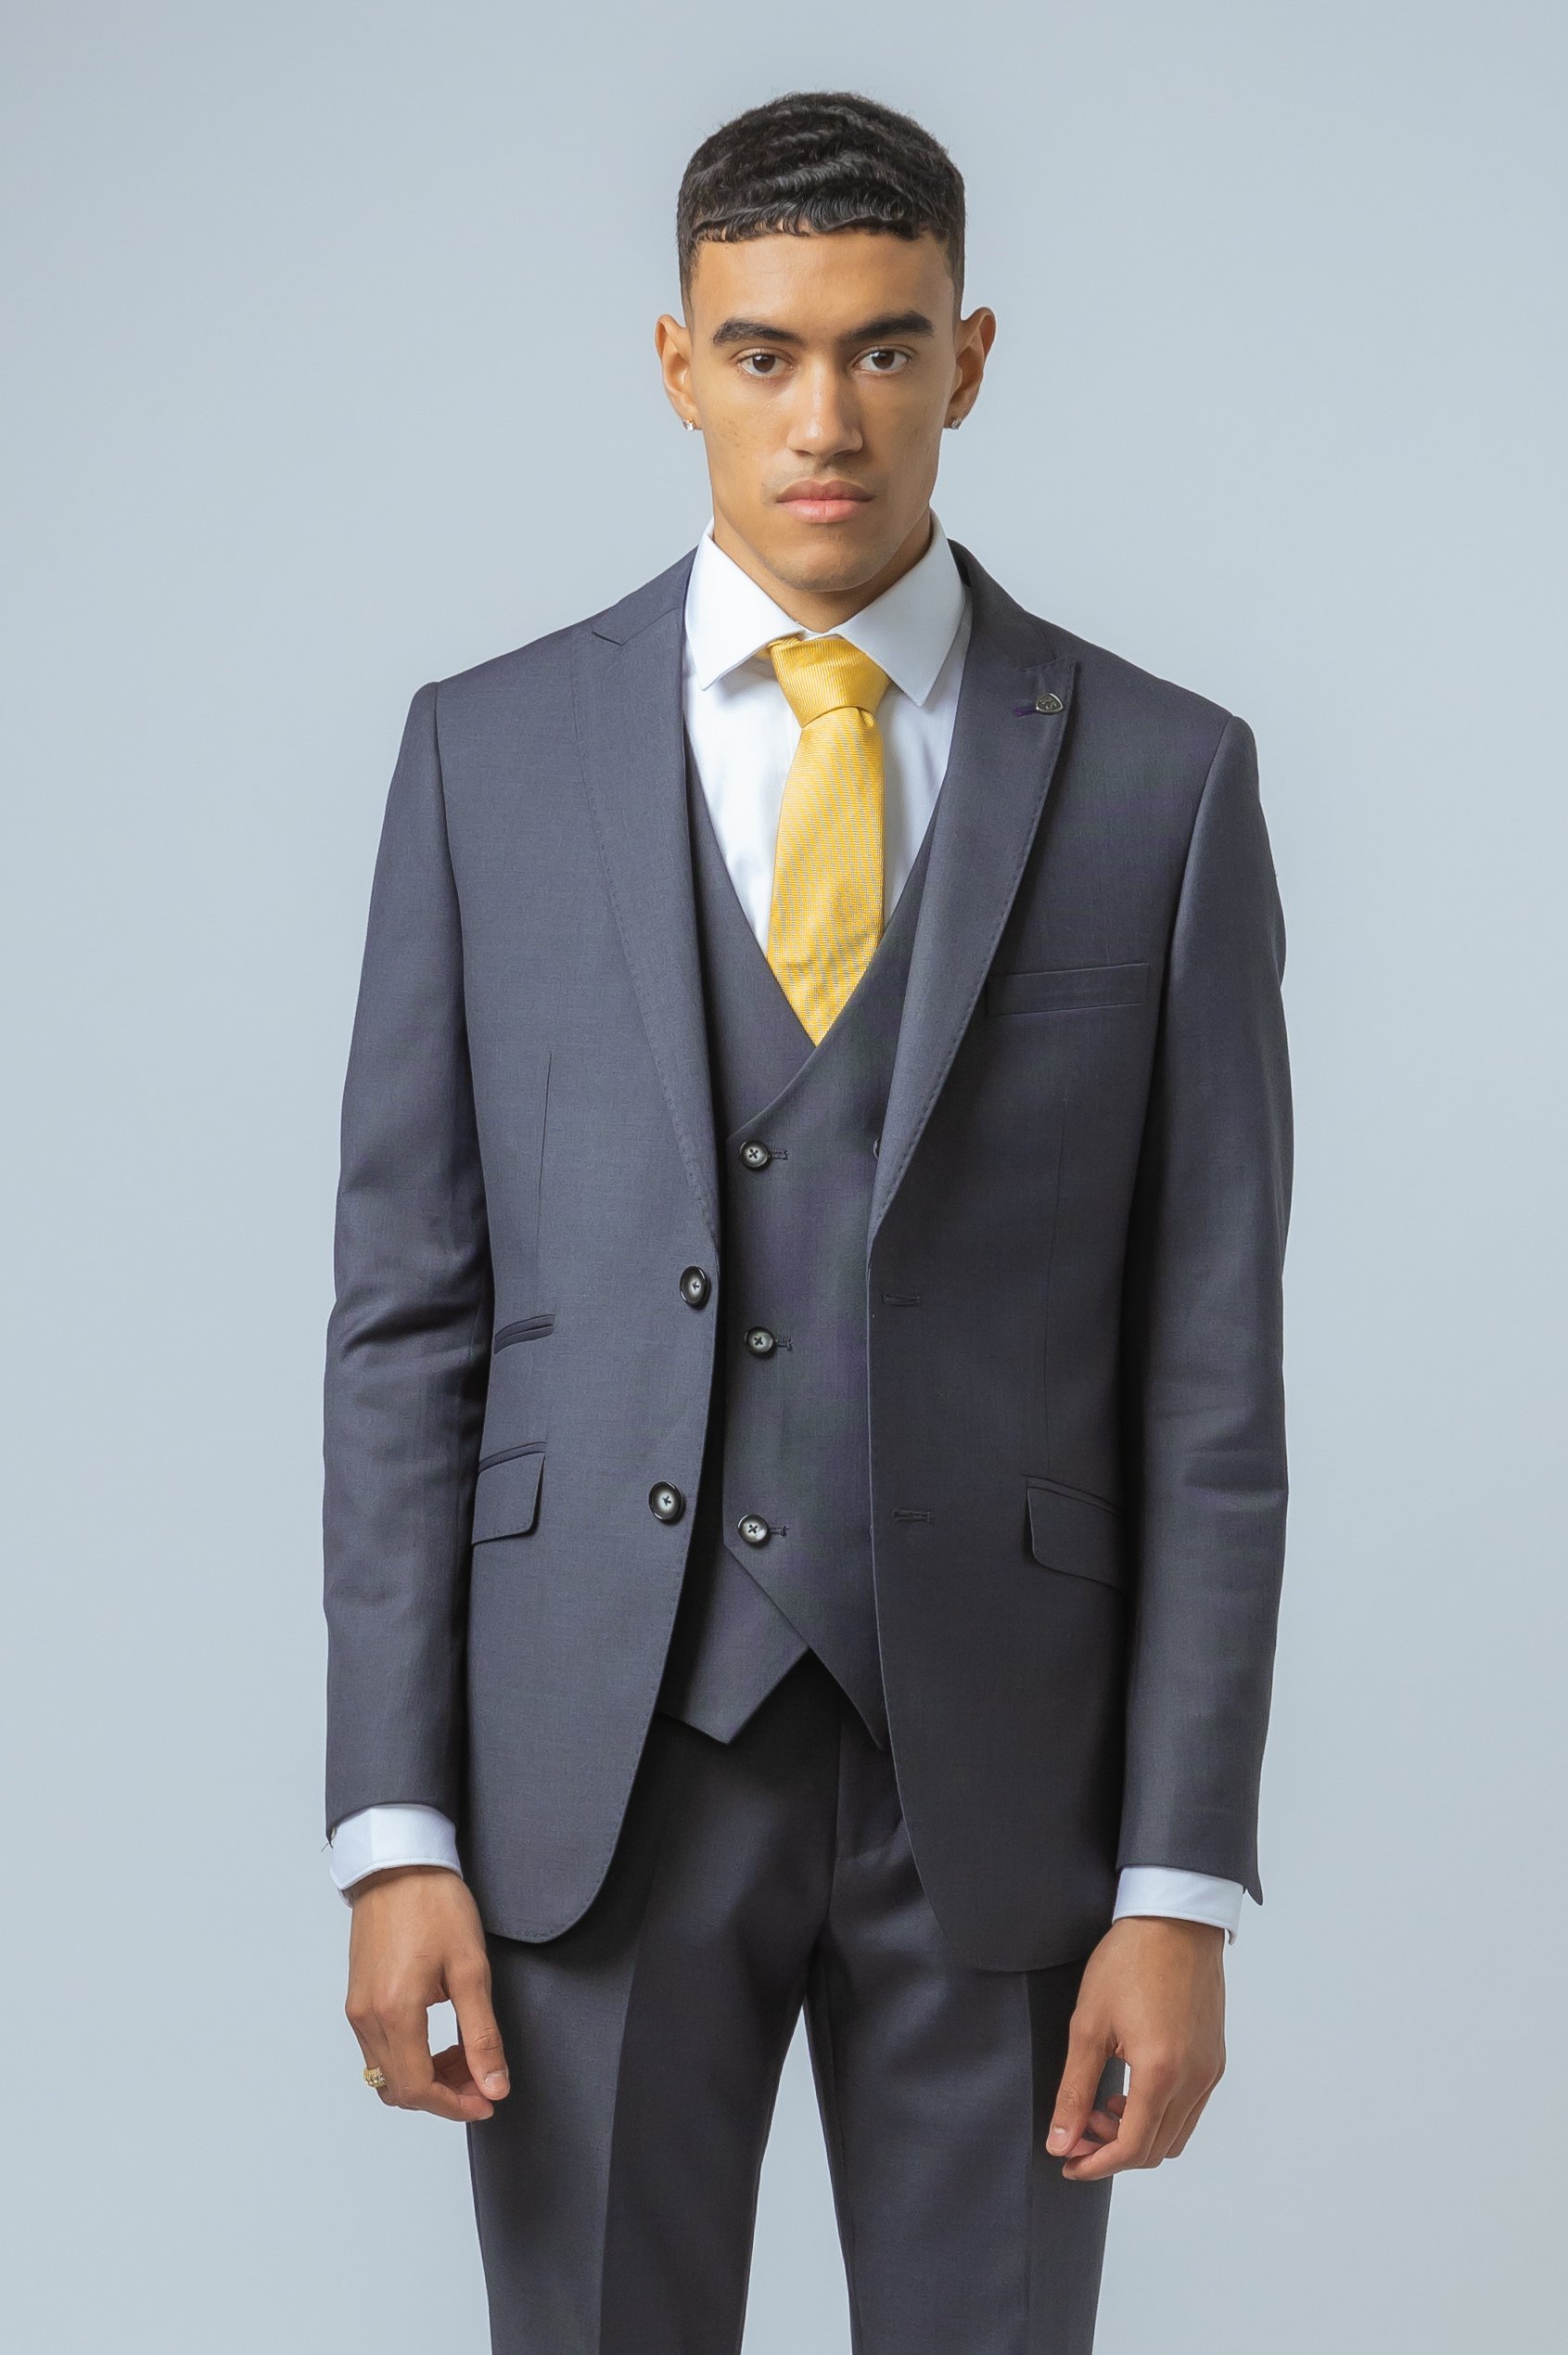 Men's Formal Grey Suit Jacket - DYLAN